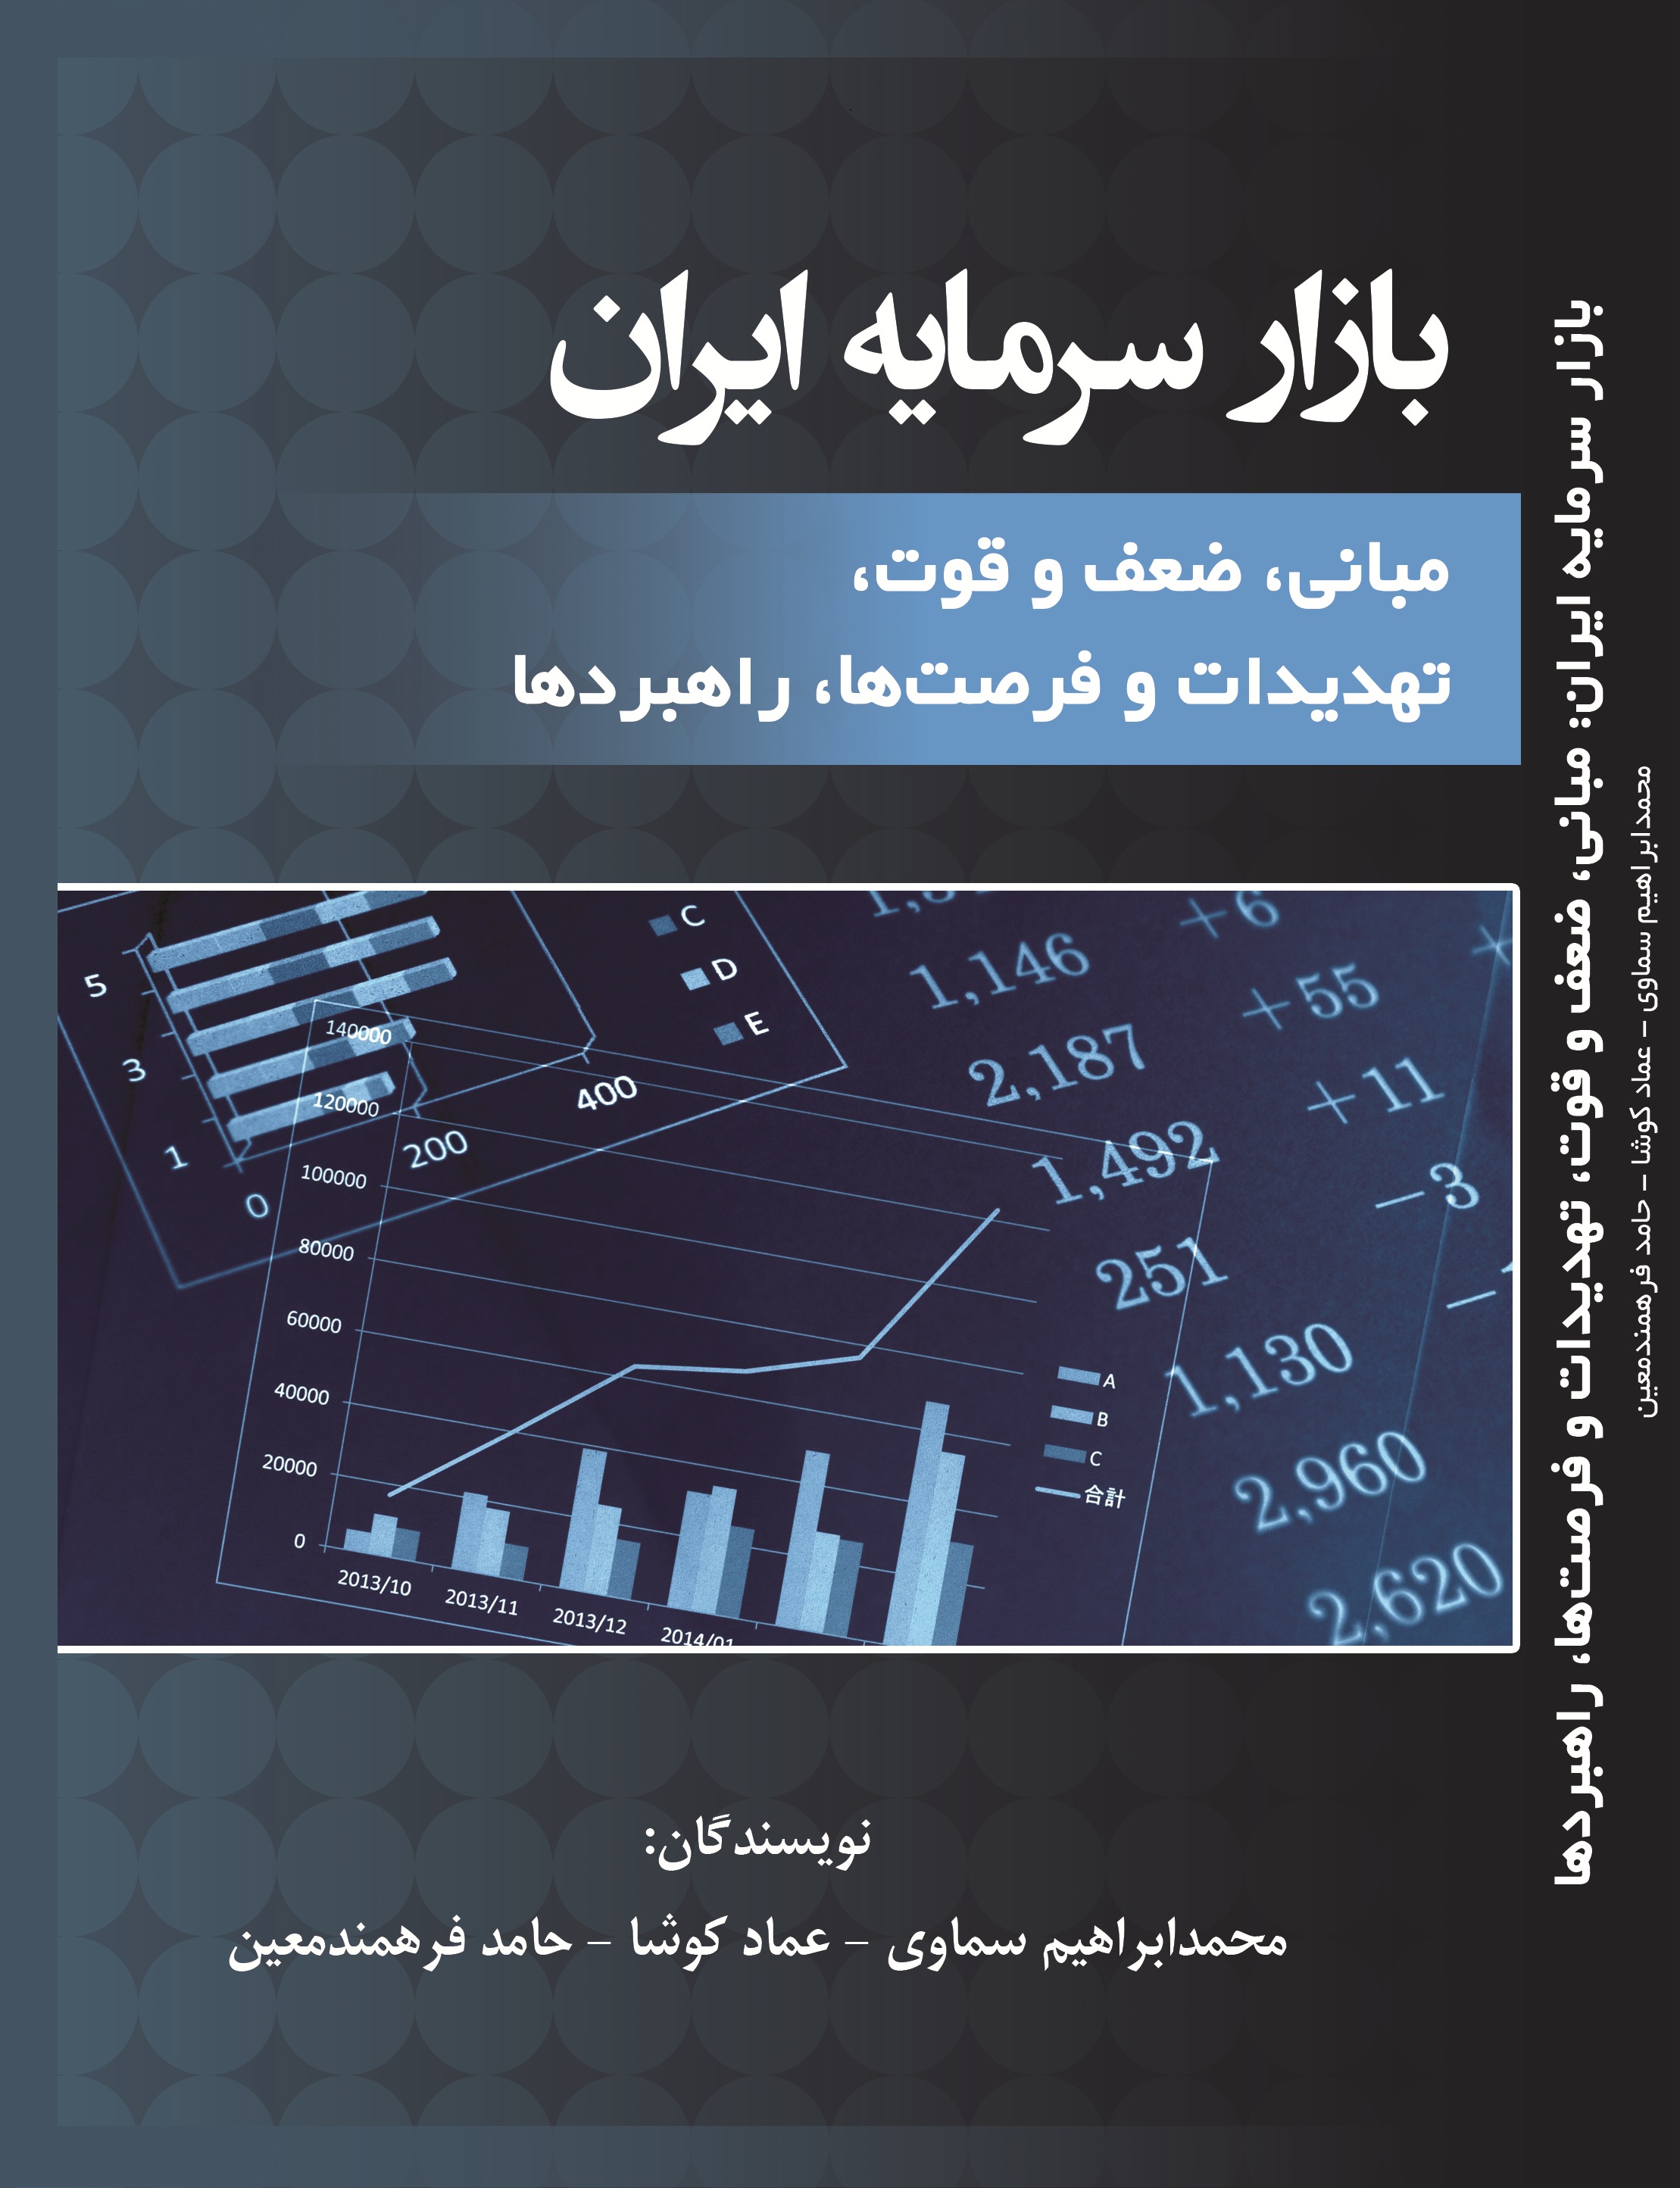 بازار سرمایه ایران مبانی، ضعف و قوت، تهدیدات و فرصتها، راهبردها